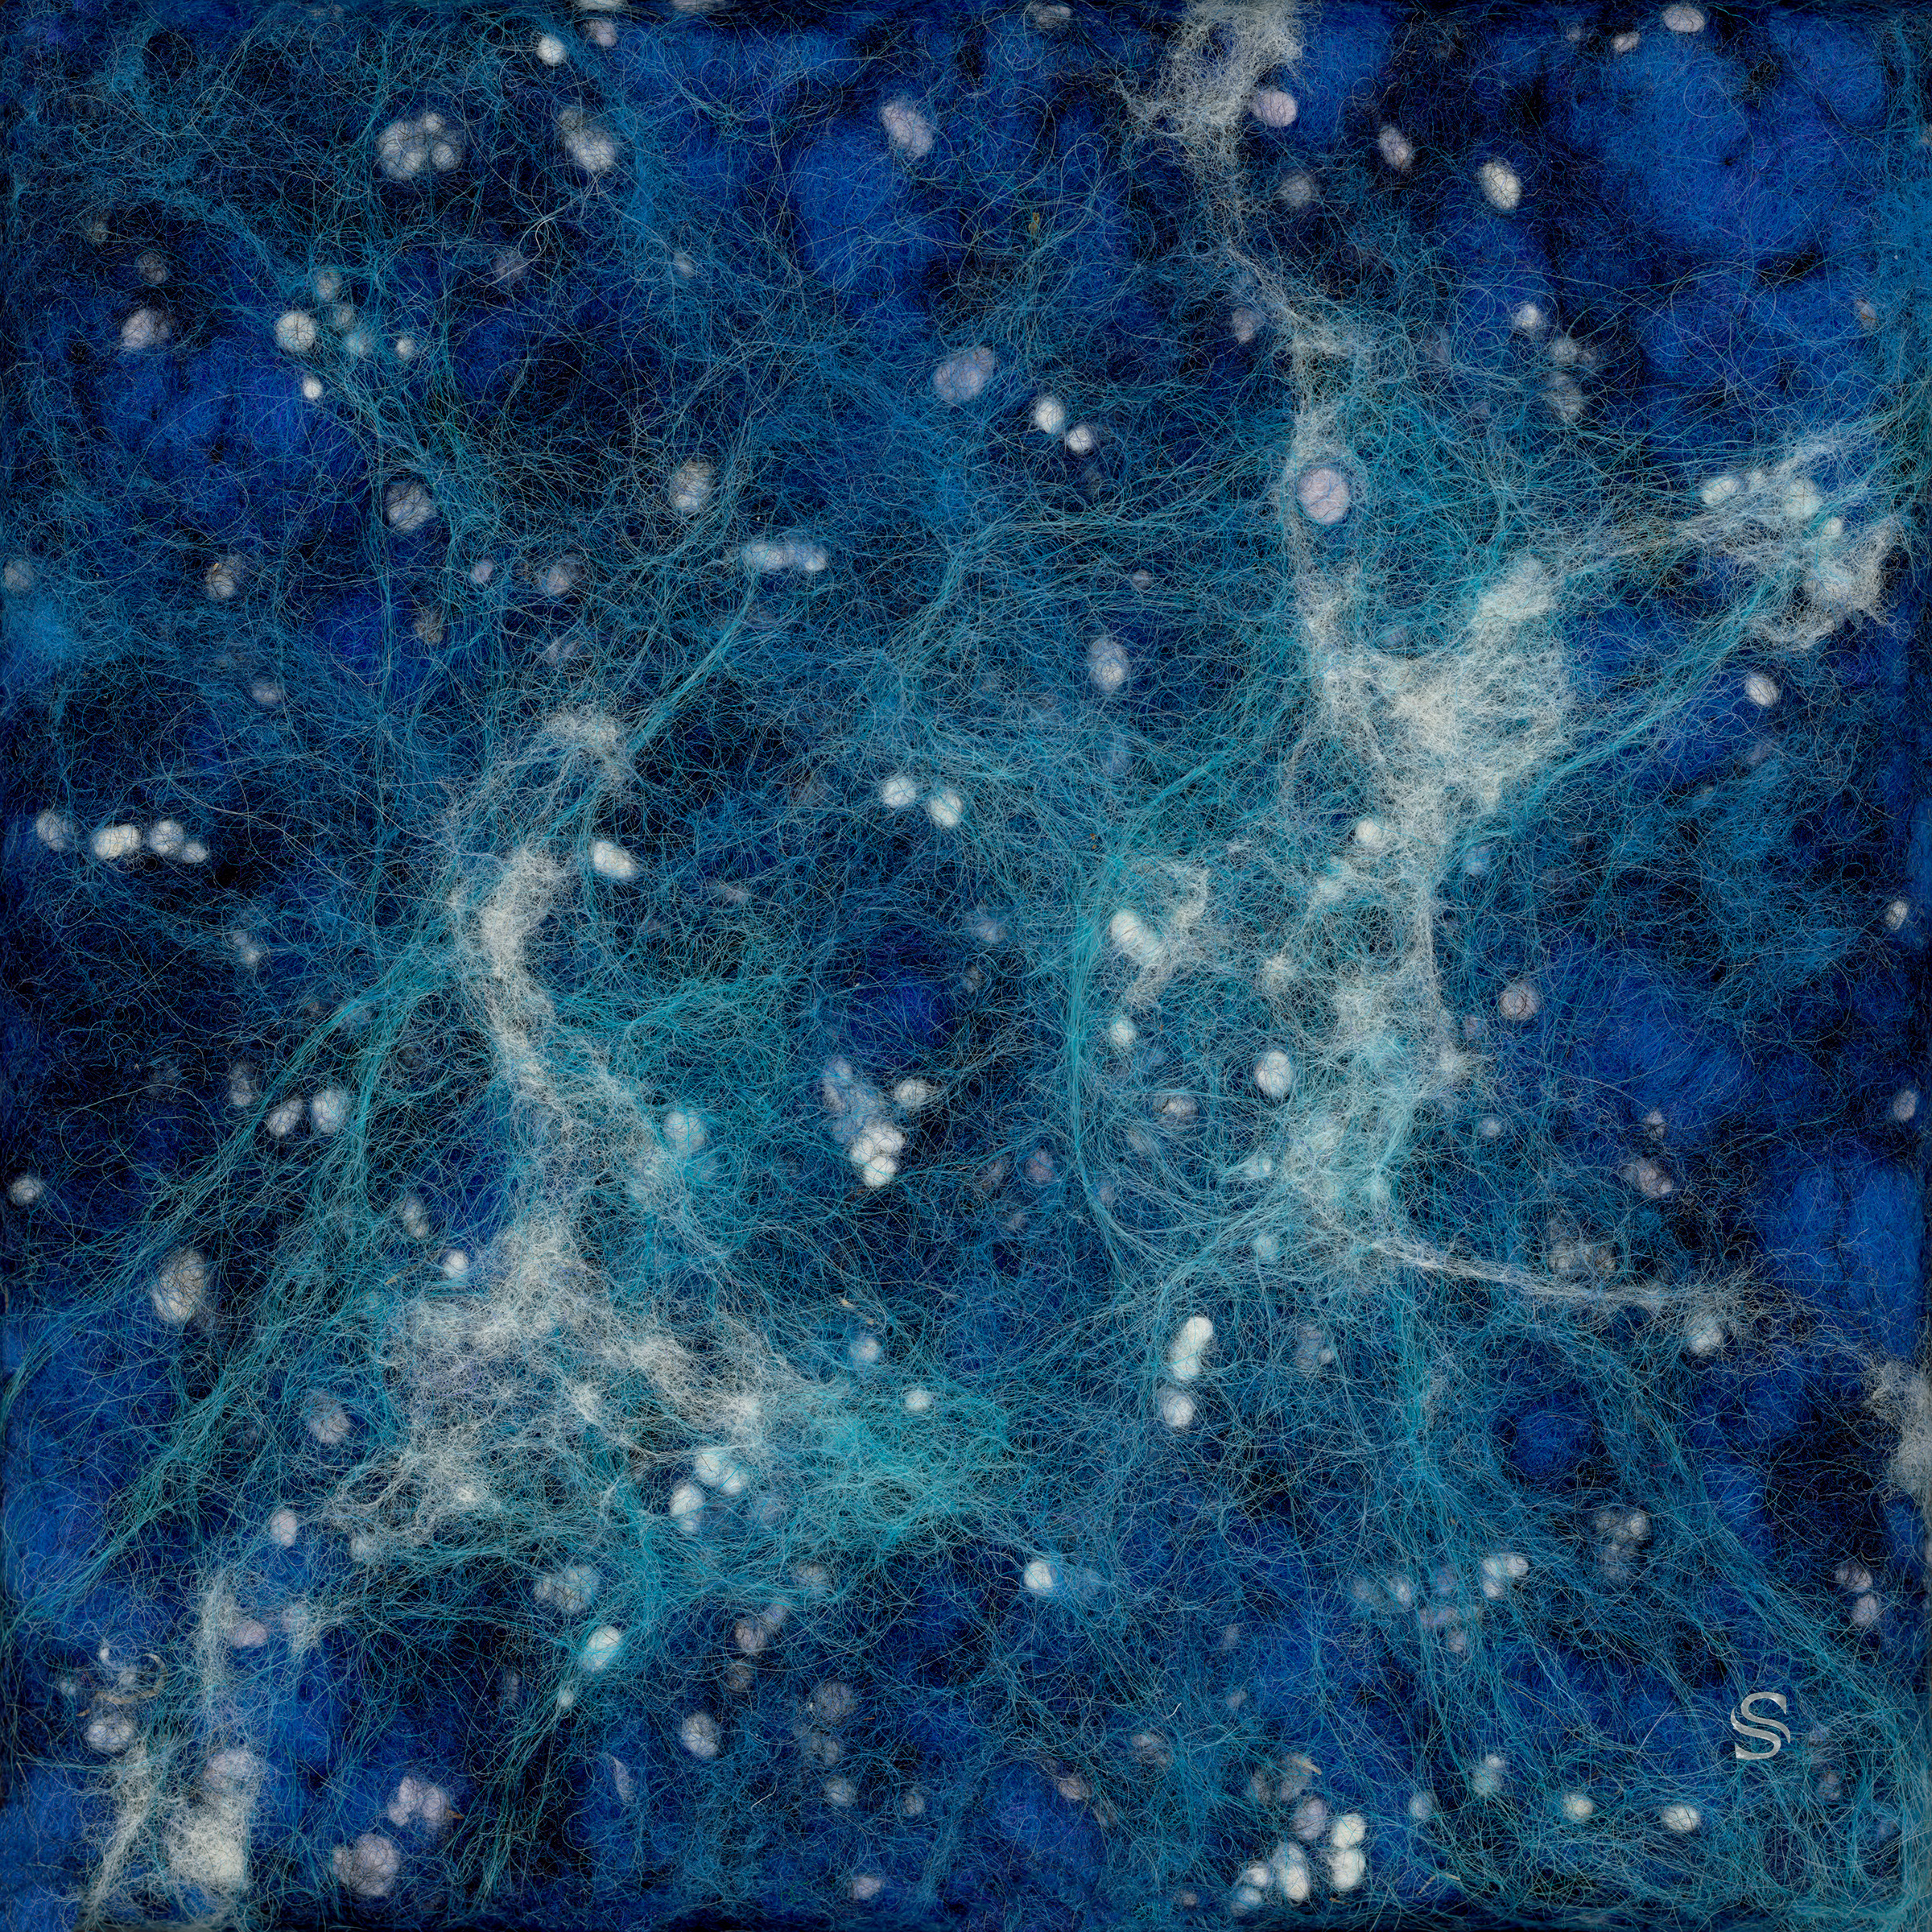 Stroud steph galaxy 03 l r 300.00 dpi  01 8x8 aidxms